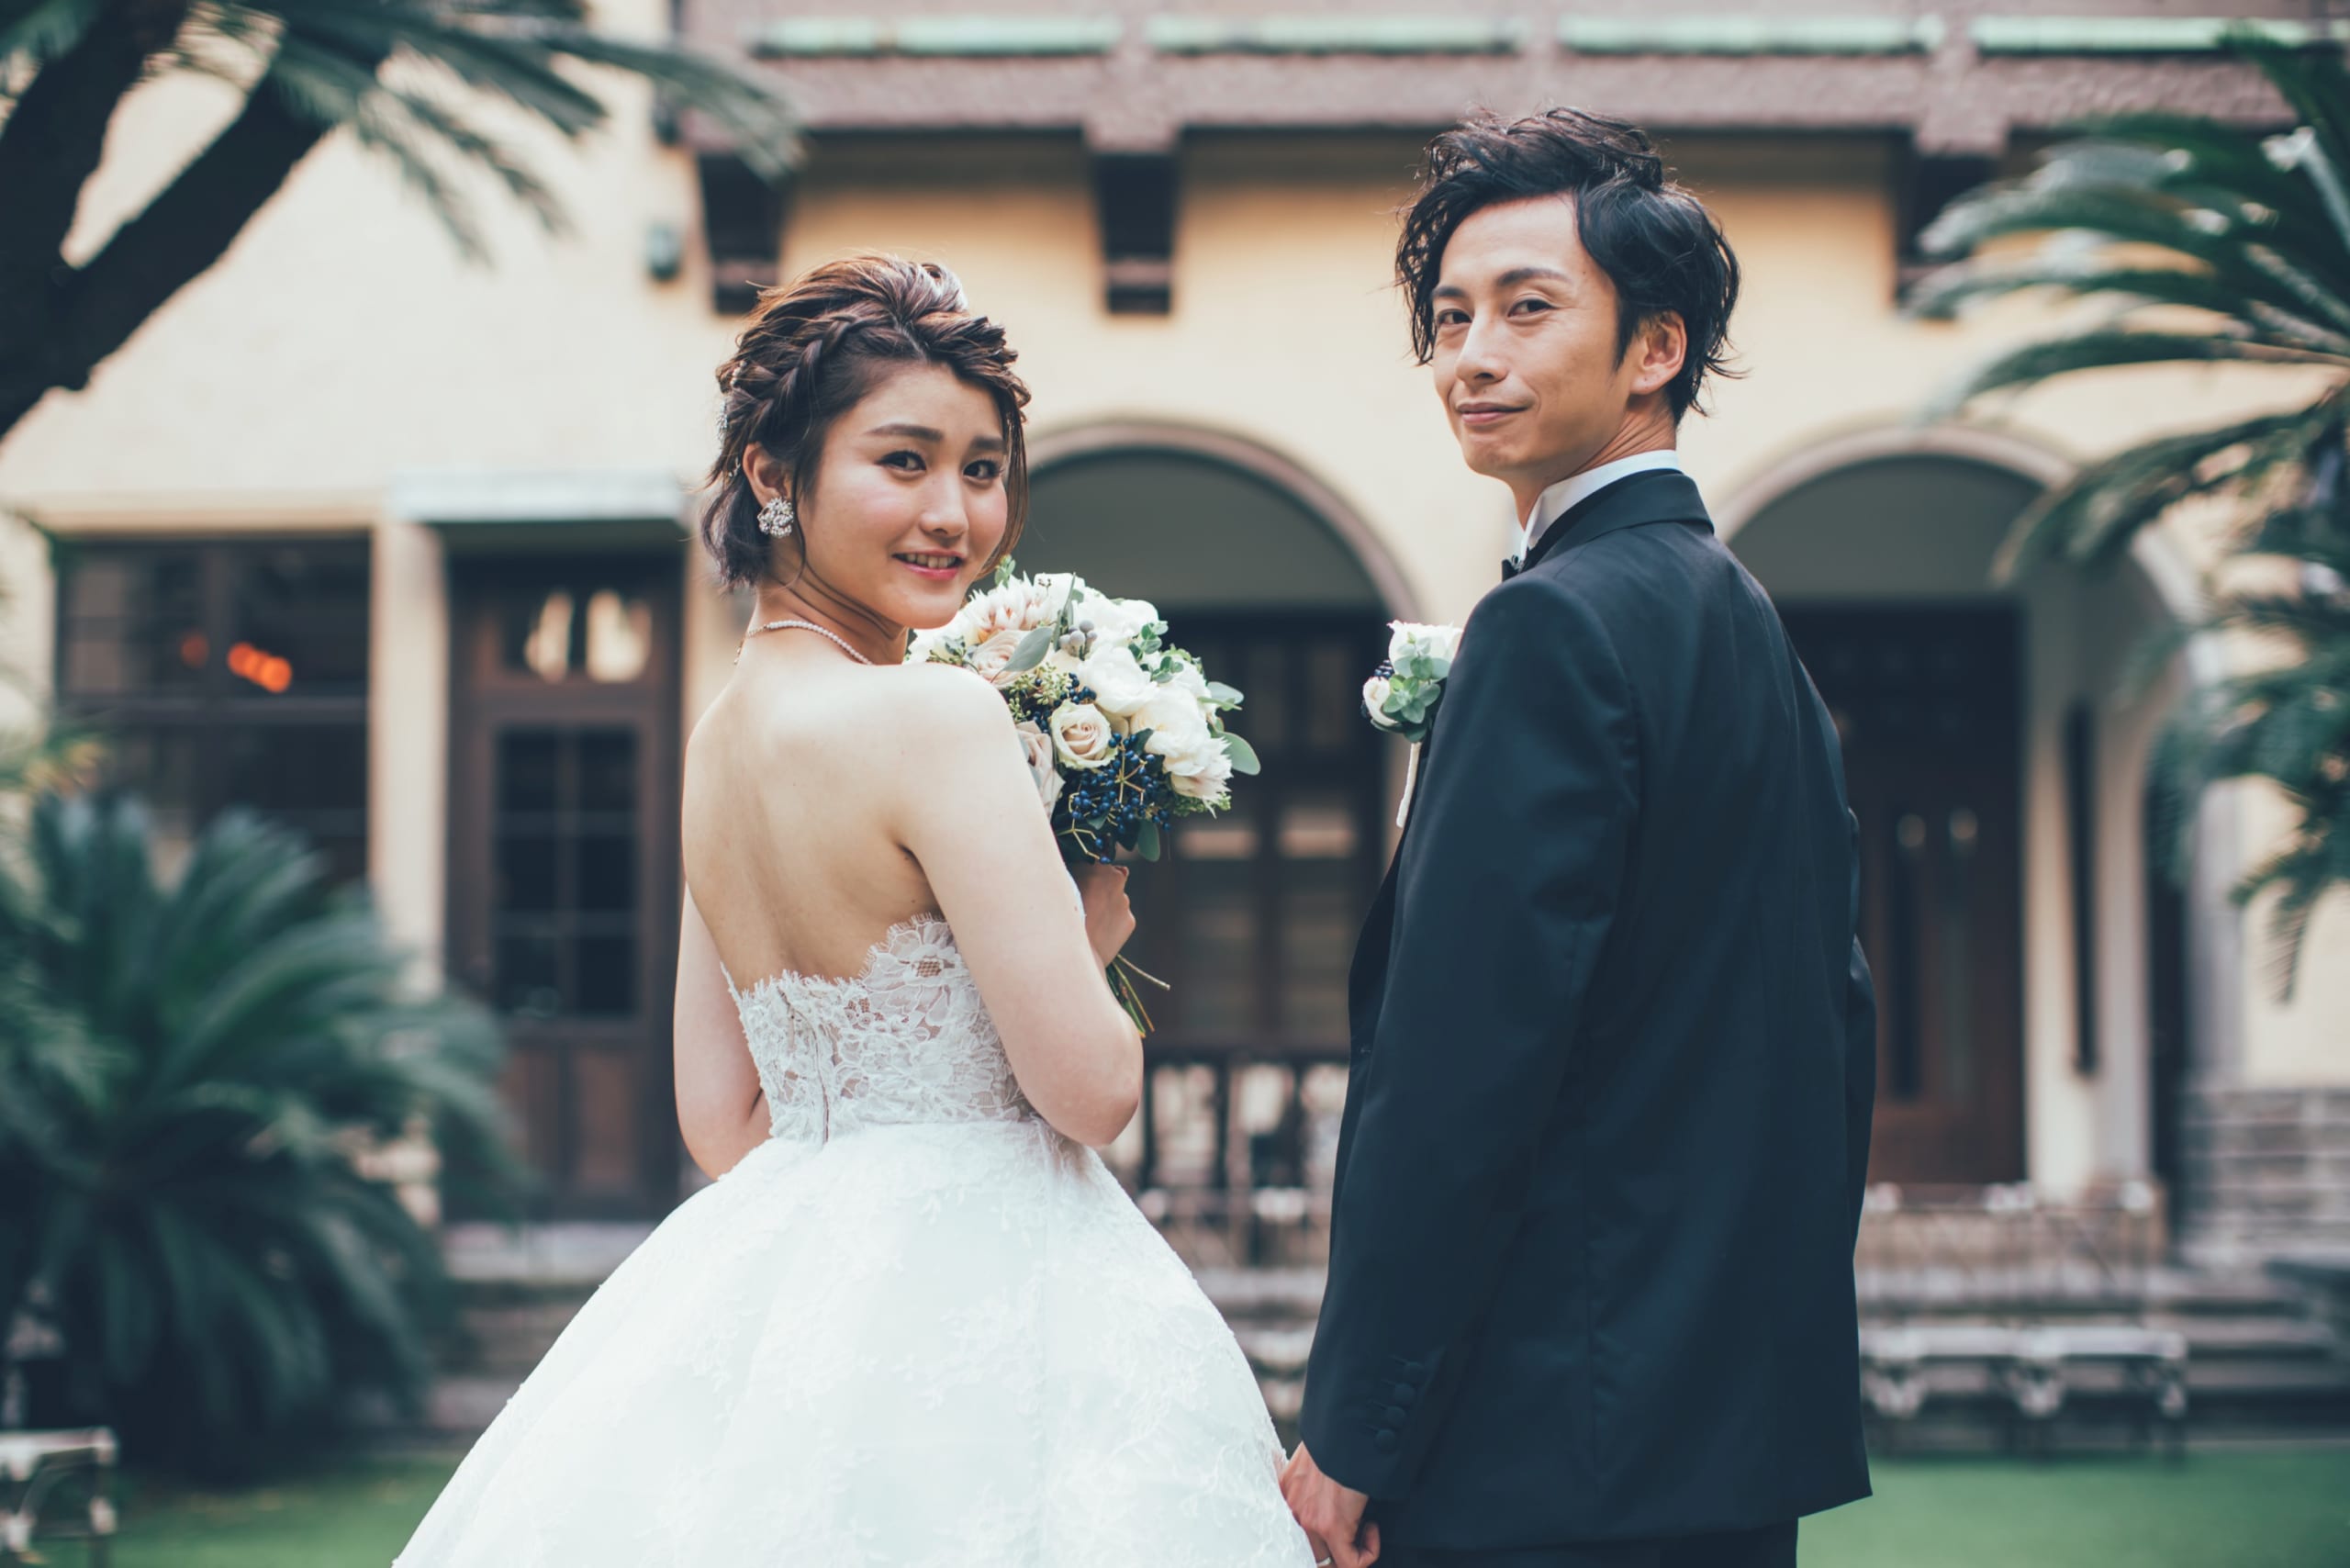 再婚時の結婚マナーは 親への挨拶や結婚の報告などのアレコレ 口コミ 評判の高い大阪 神戸の結婚式 ウェディングプロデュース会社3選